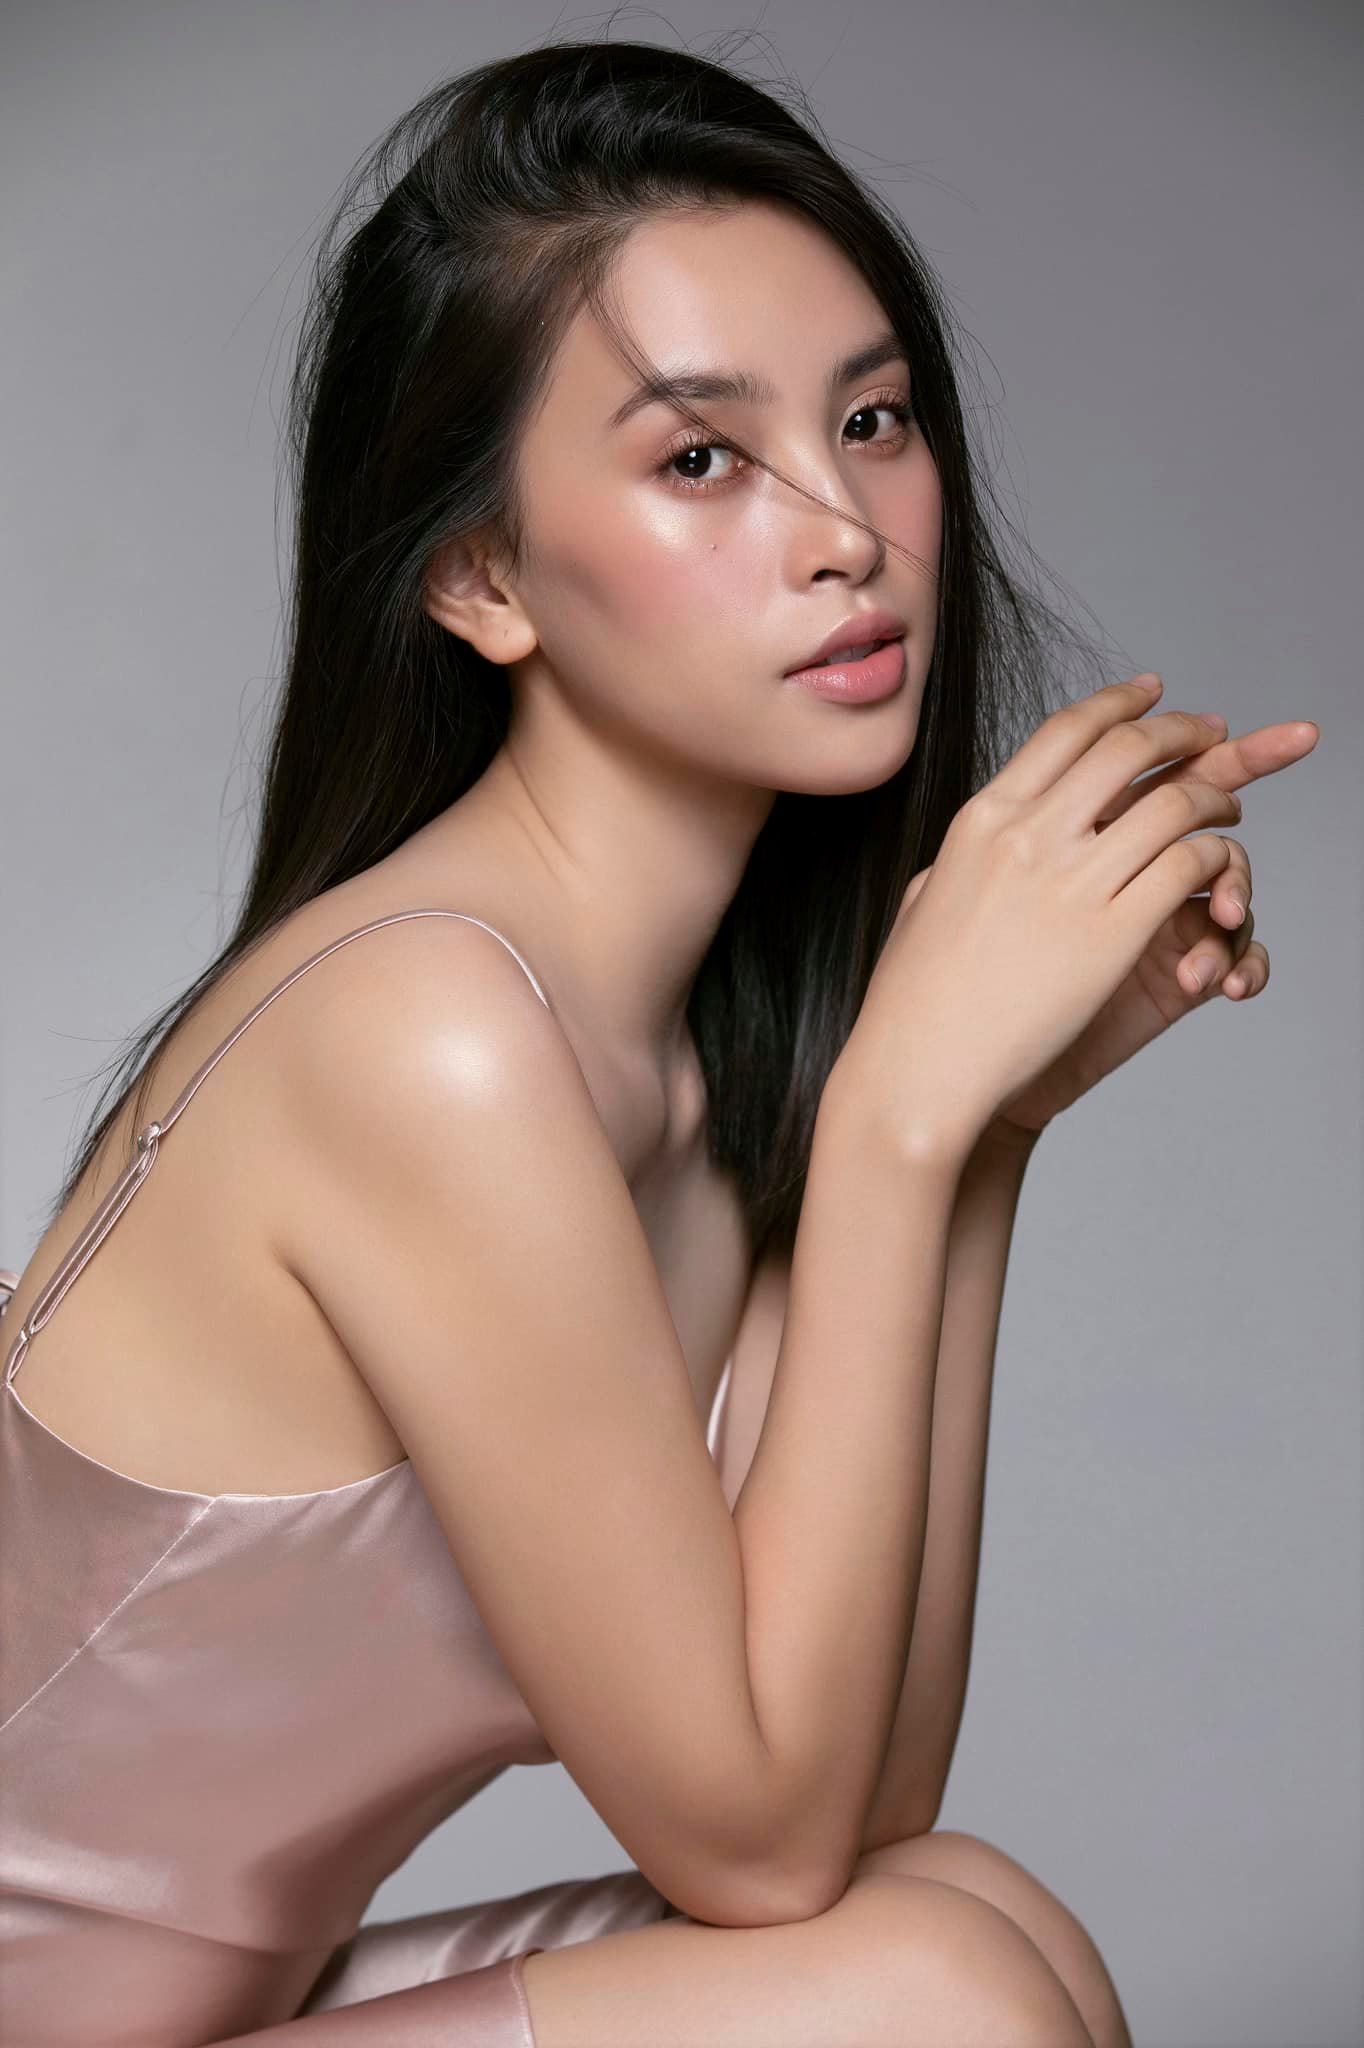 Hoa hậu Tiểu Vy lần đầu nhận vai chính phim điện ảnh - Ảnh 1.